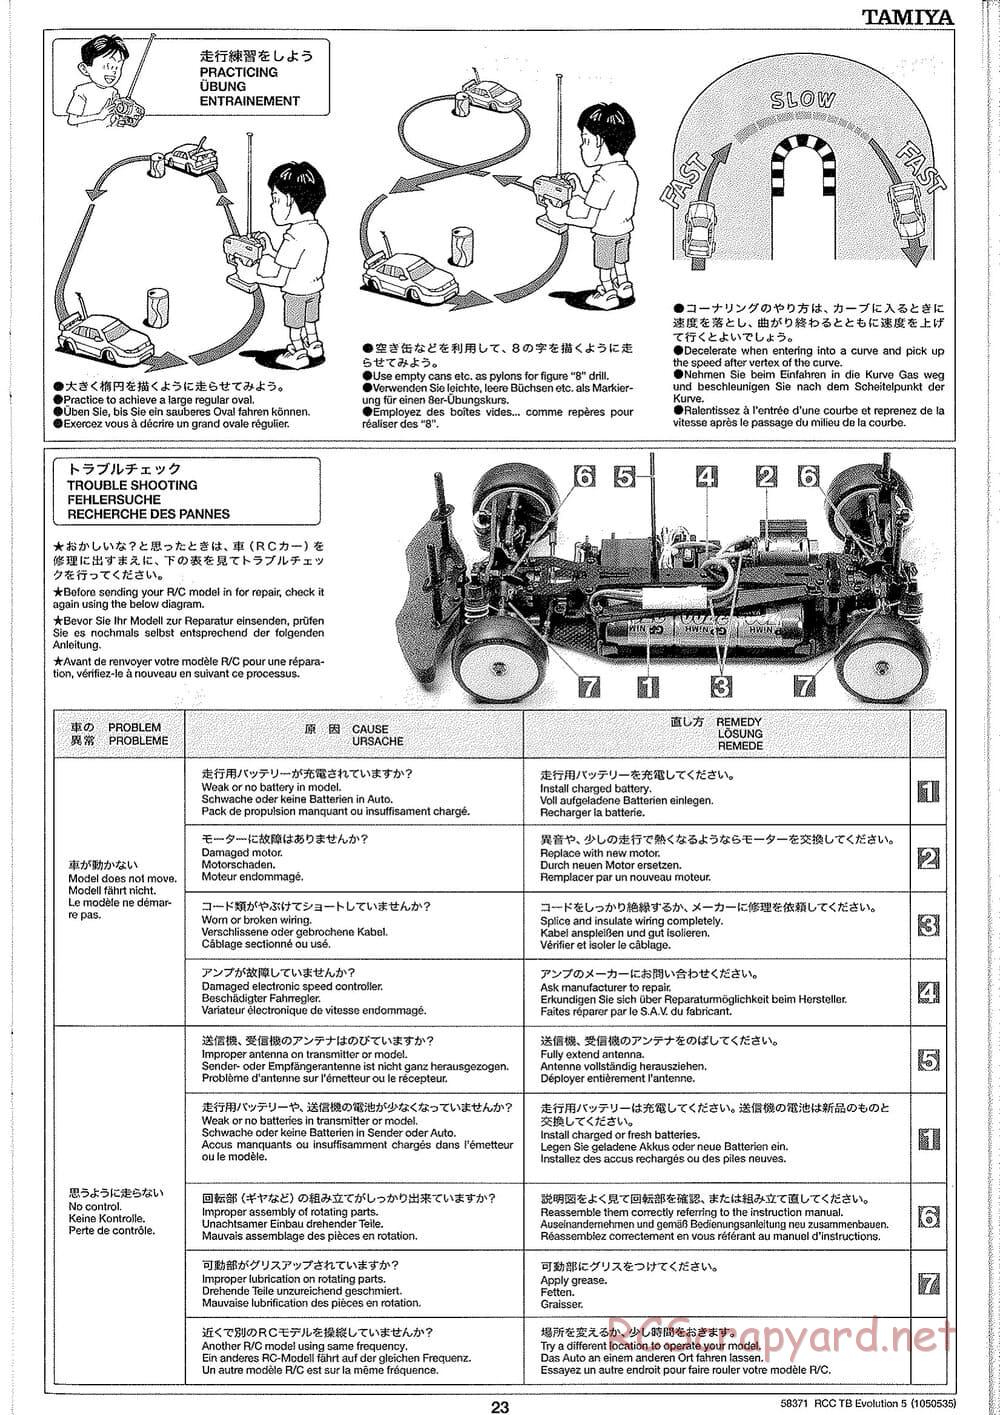 Tamiya - TB Evolution V Chassis - Manual - Page 23